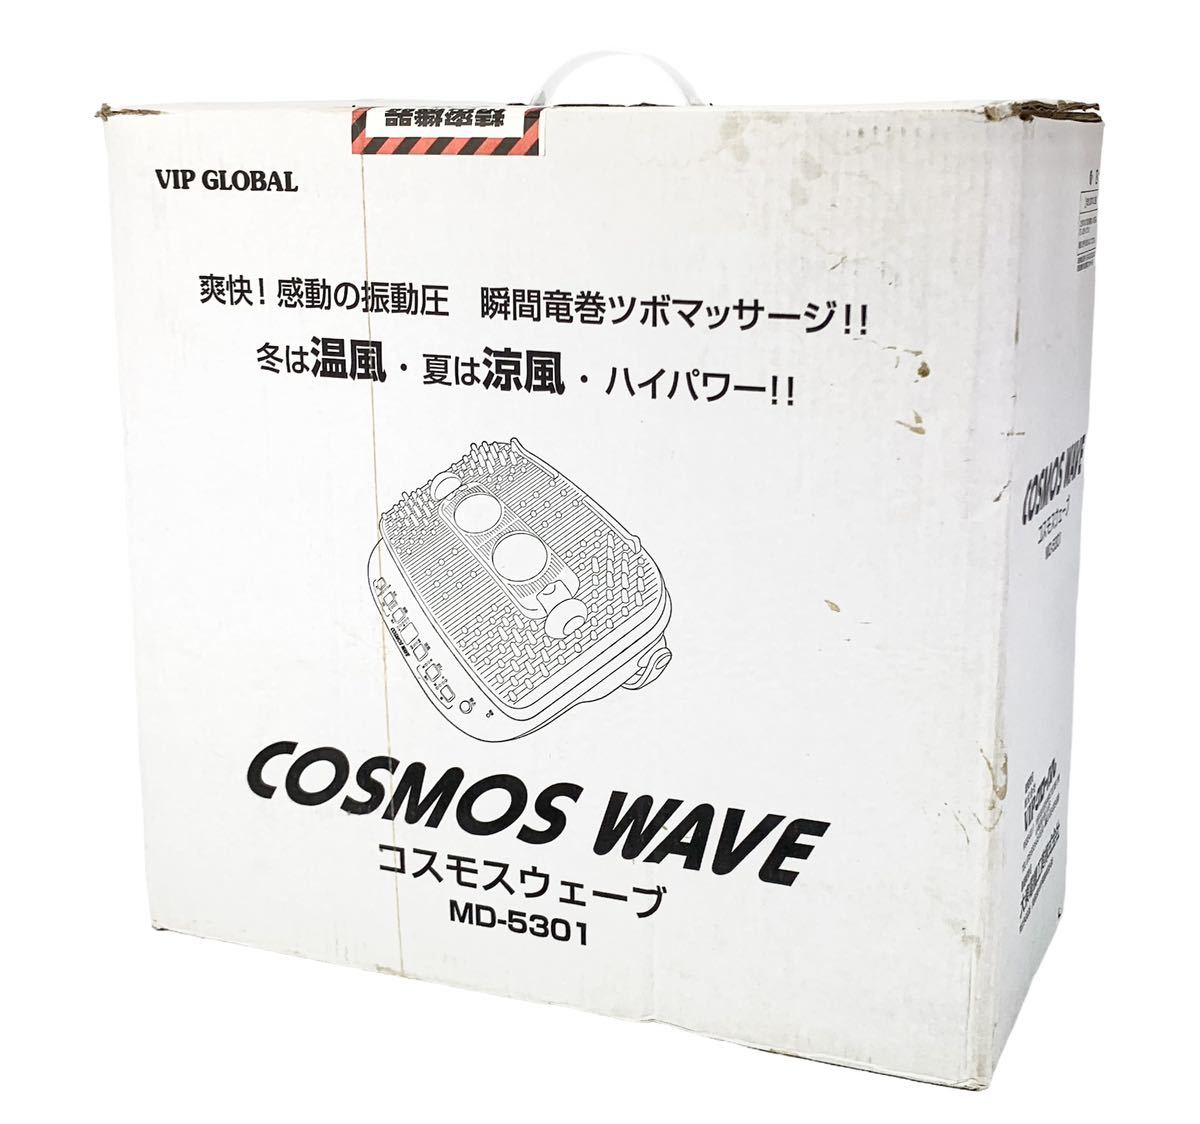 未使用品】ビップグローバル コスモウェーブ COSMOS WAVE MD-5301